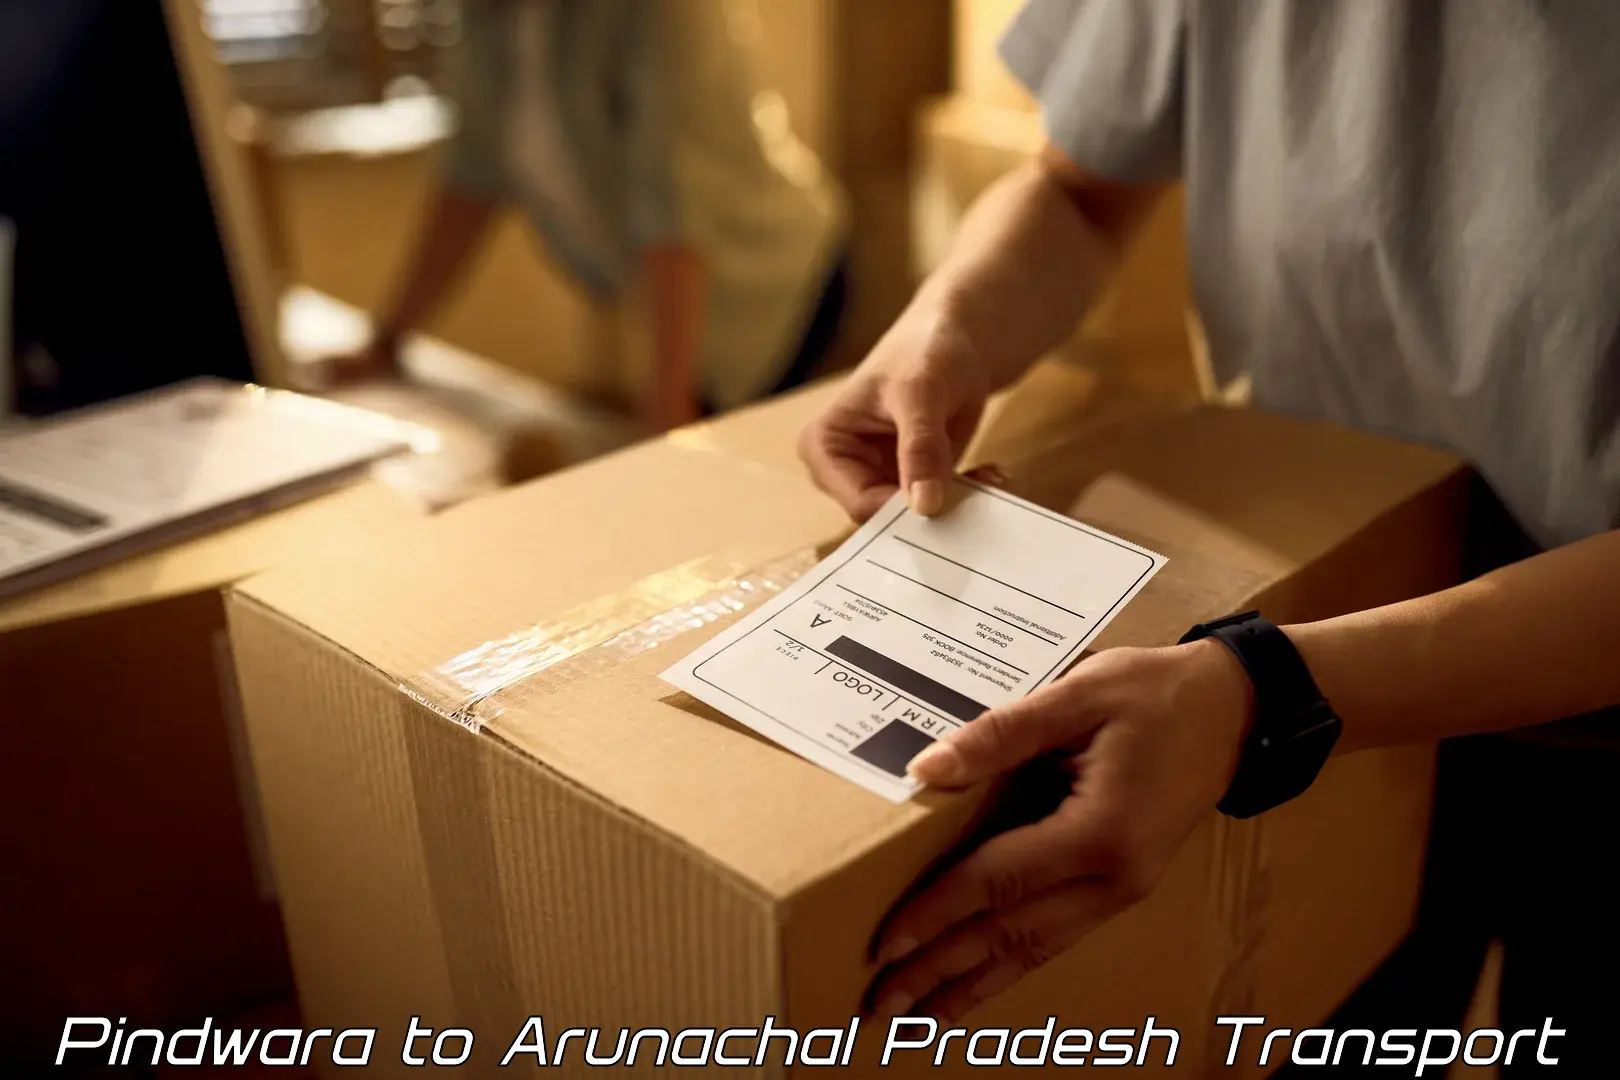 Furniture transport service Pindwara to Arunachal Pradesh